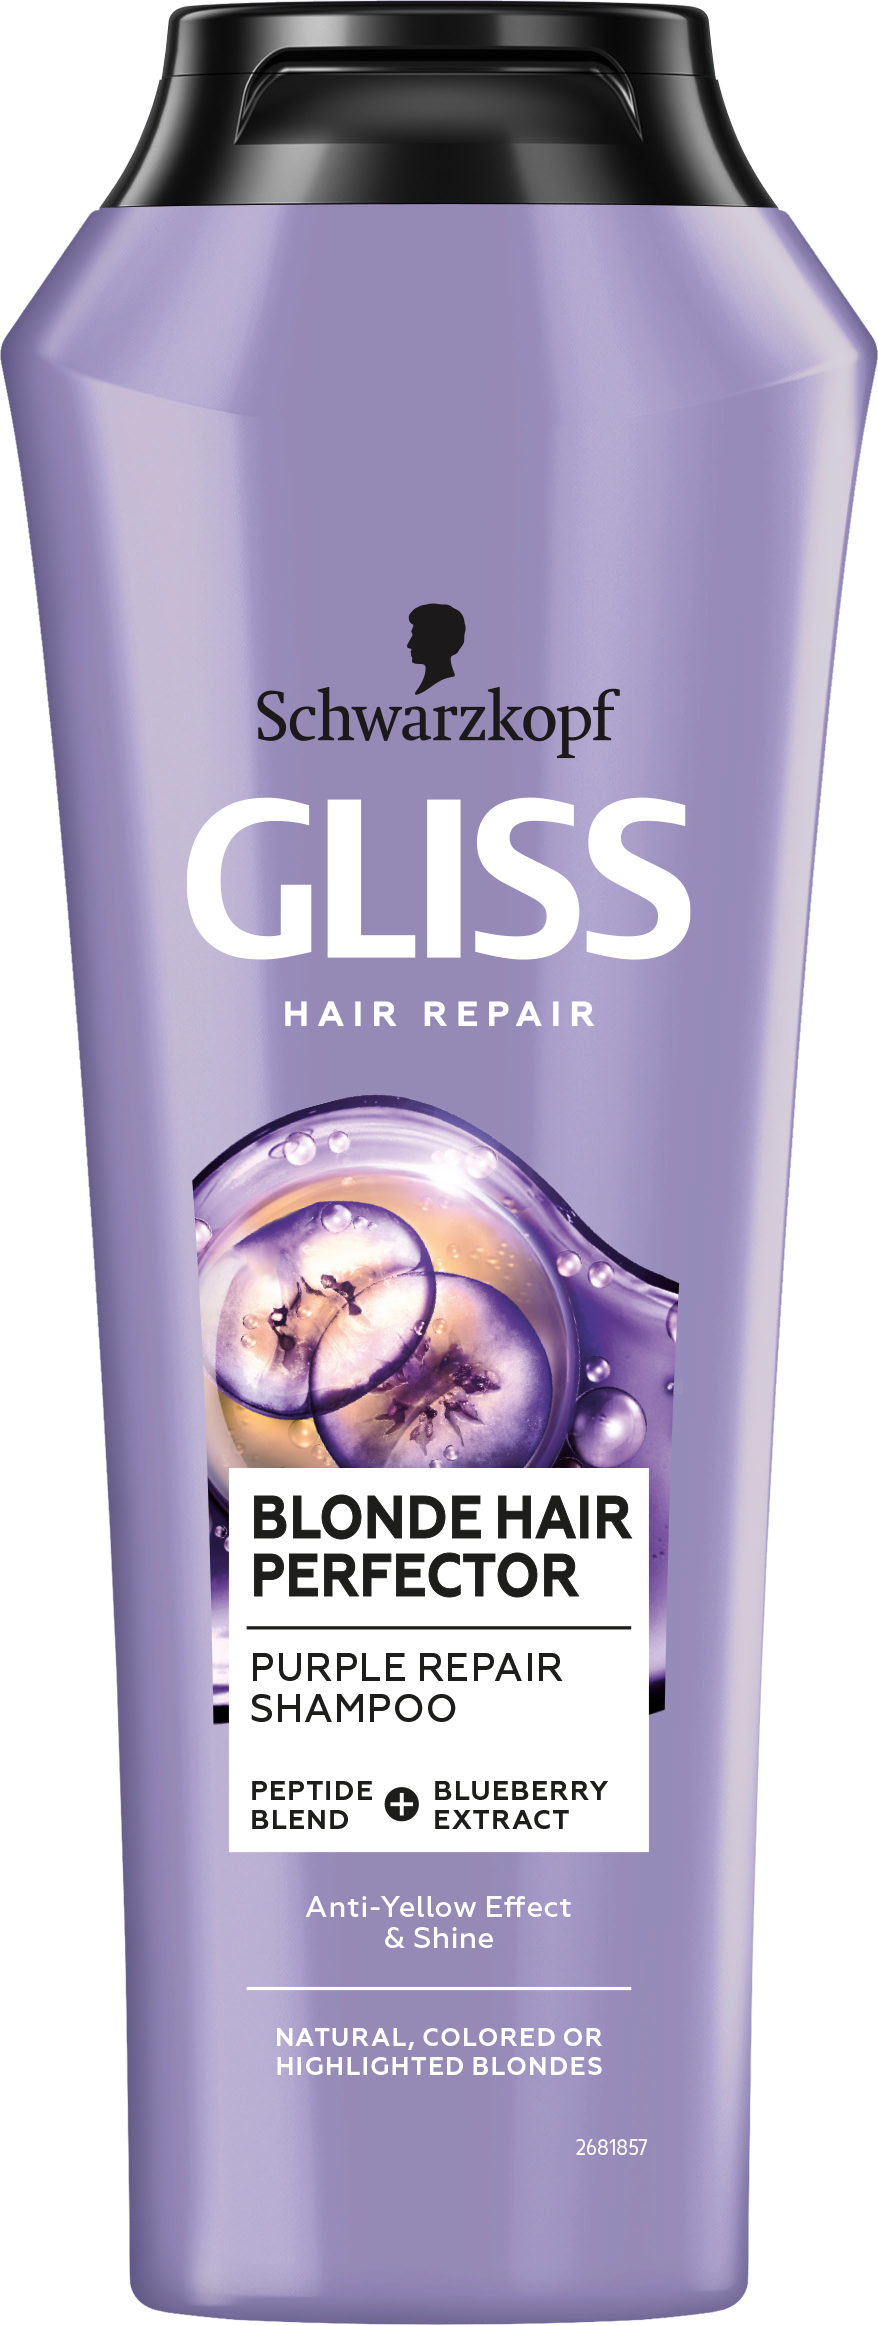 Шампунь тонуючий для білявого волосся Gliss Blonde Hair Perfector, 250 мл - фото 1